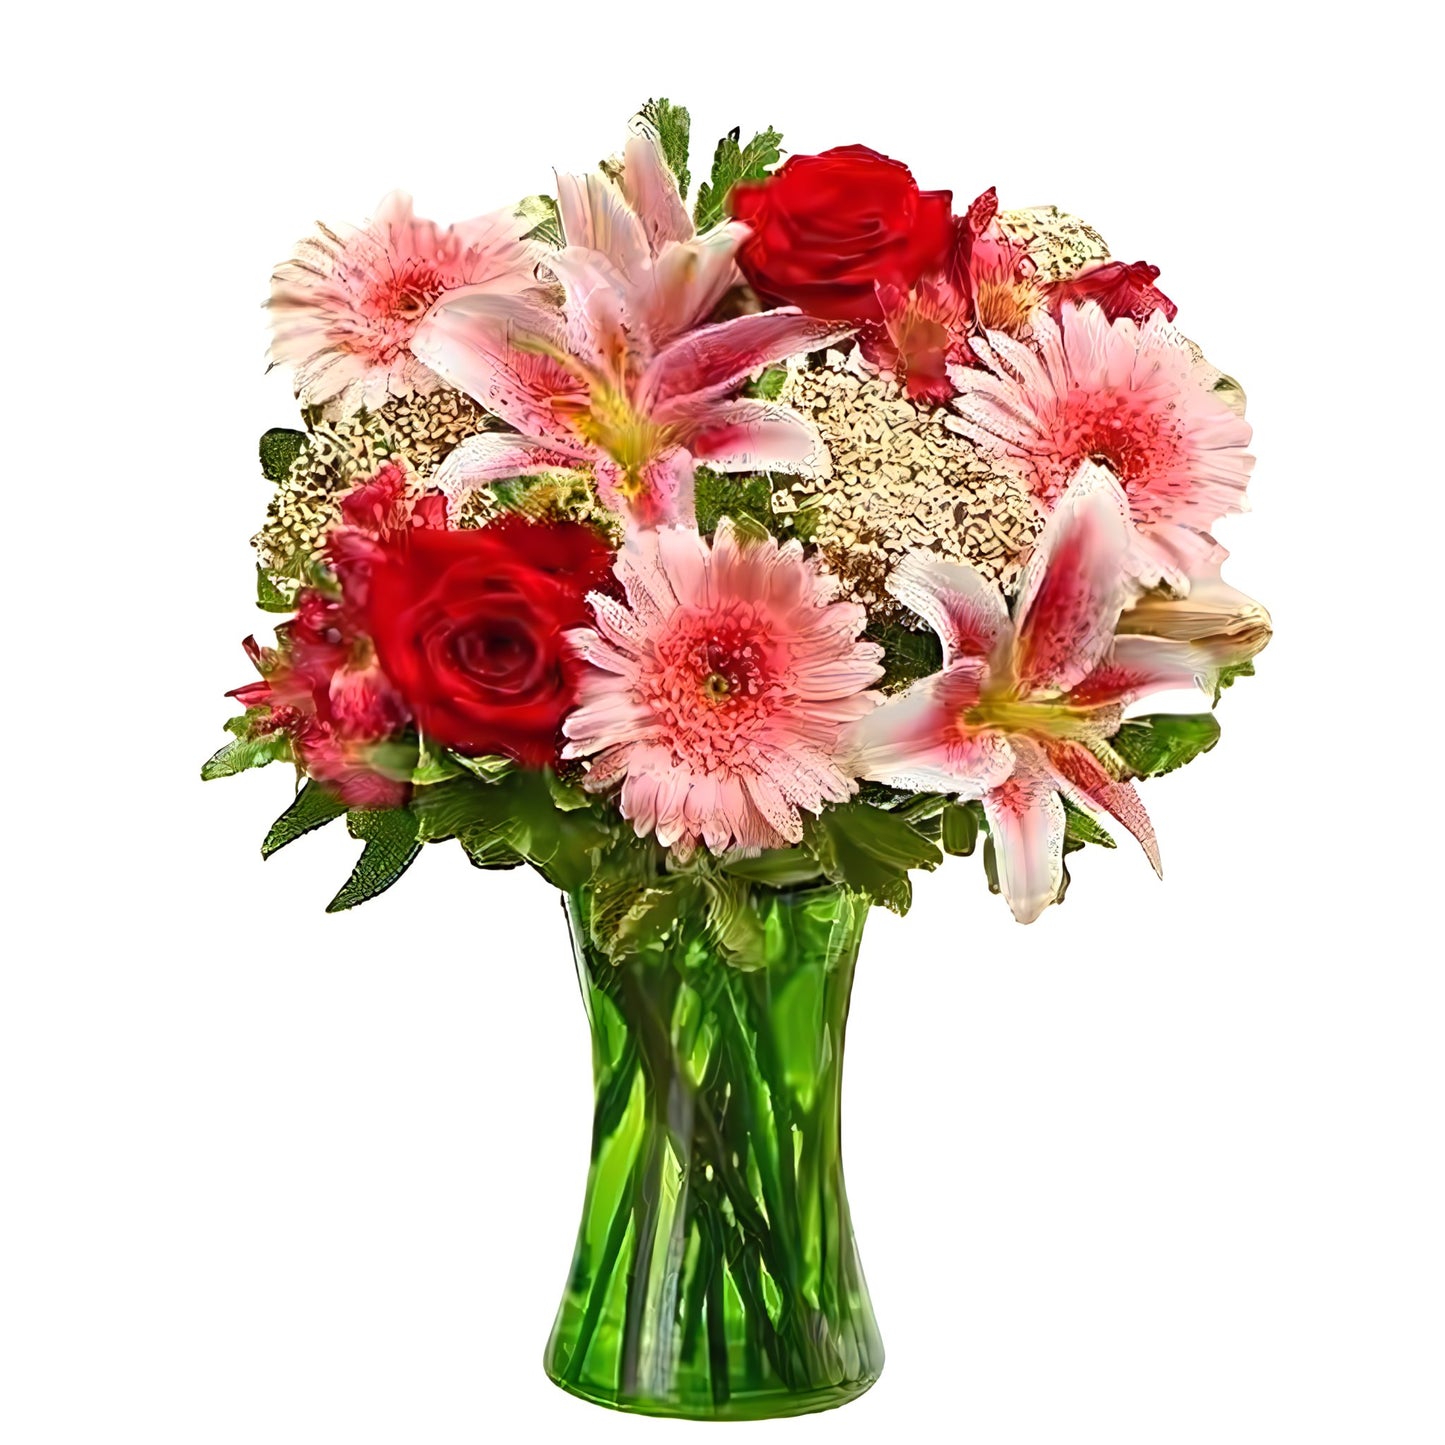 Sympathy Sentiments Bouquet - Floral Arrangement - Flower Delivery Brooklyn